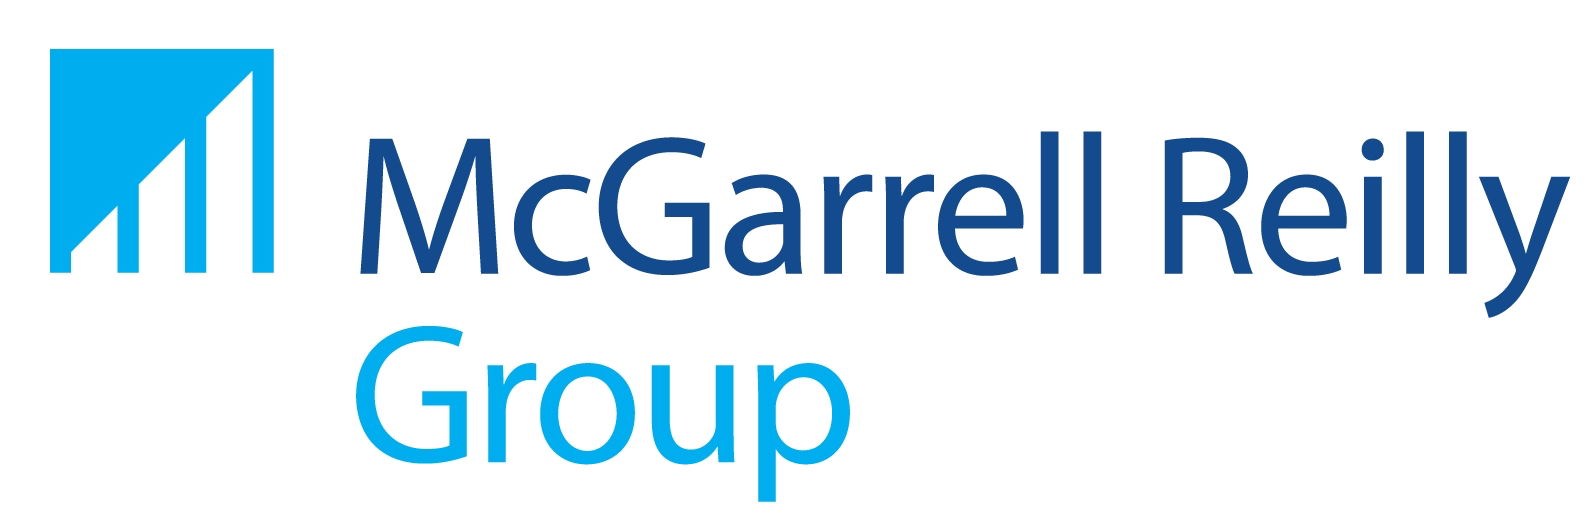 McGarrell Reilly Group